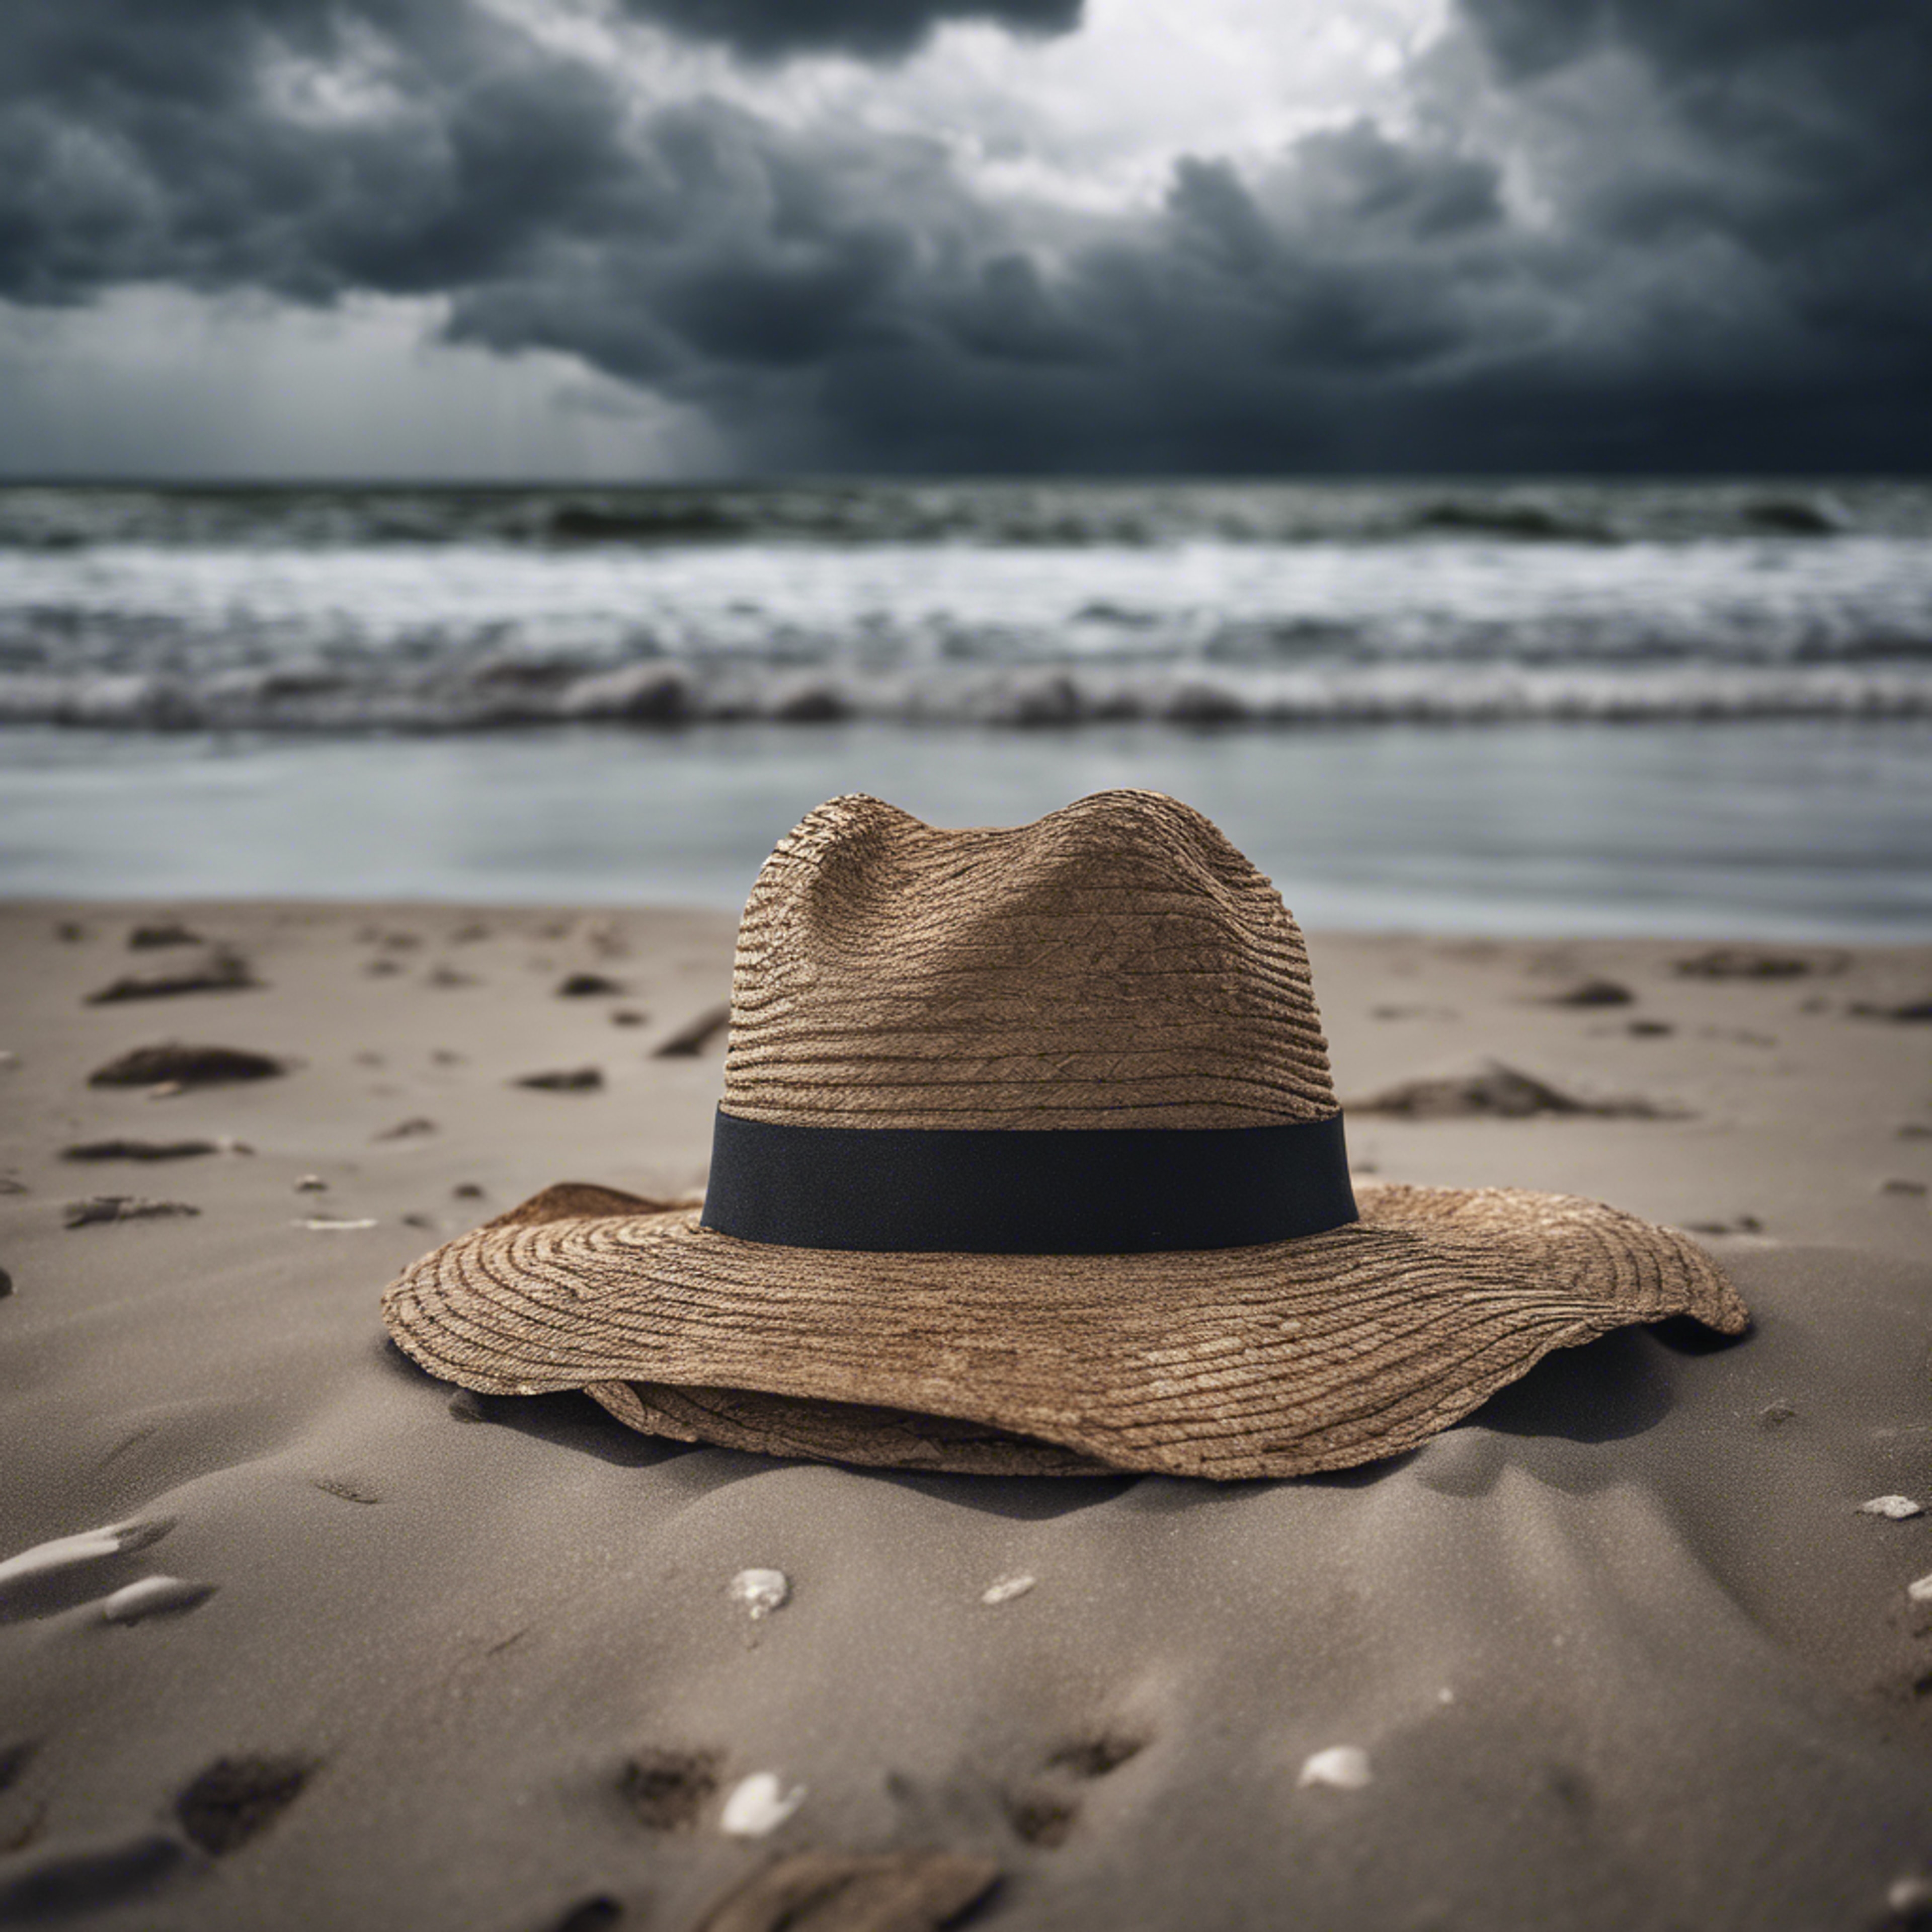 A single, forsaken hat blowing across a desolate beach under a stormy sky. Tapet[22c522374a7d402da3d5]